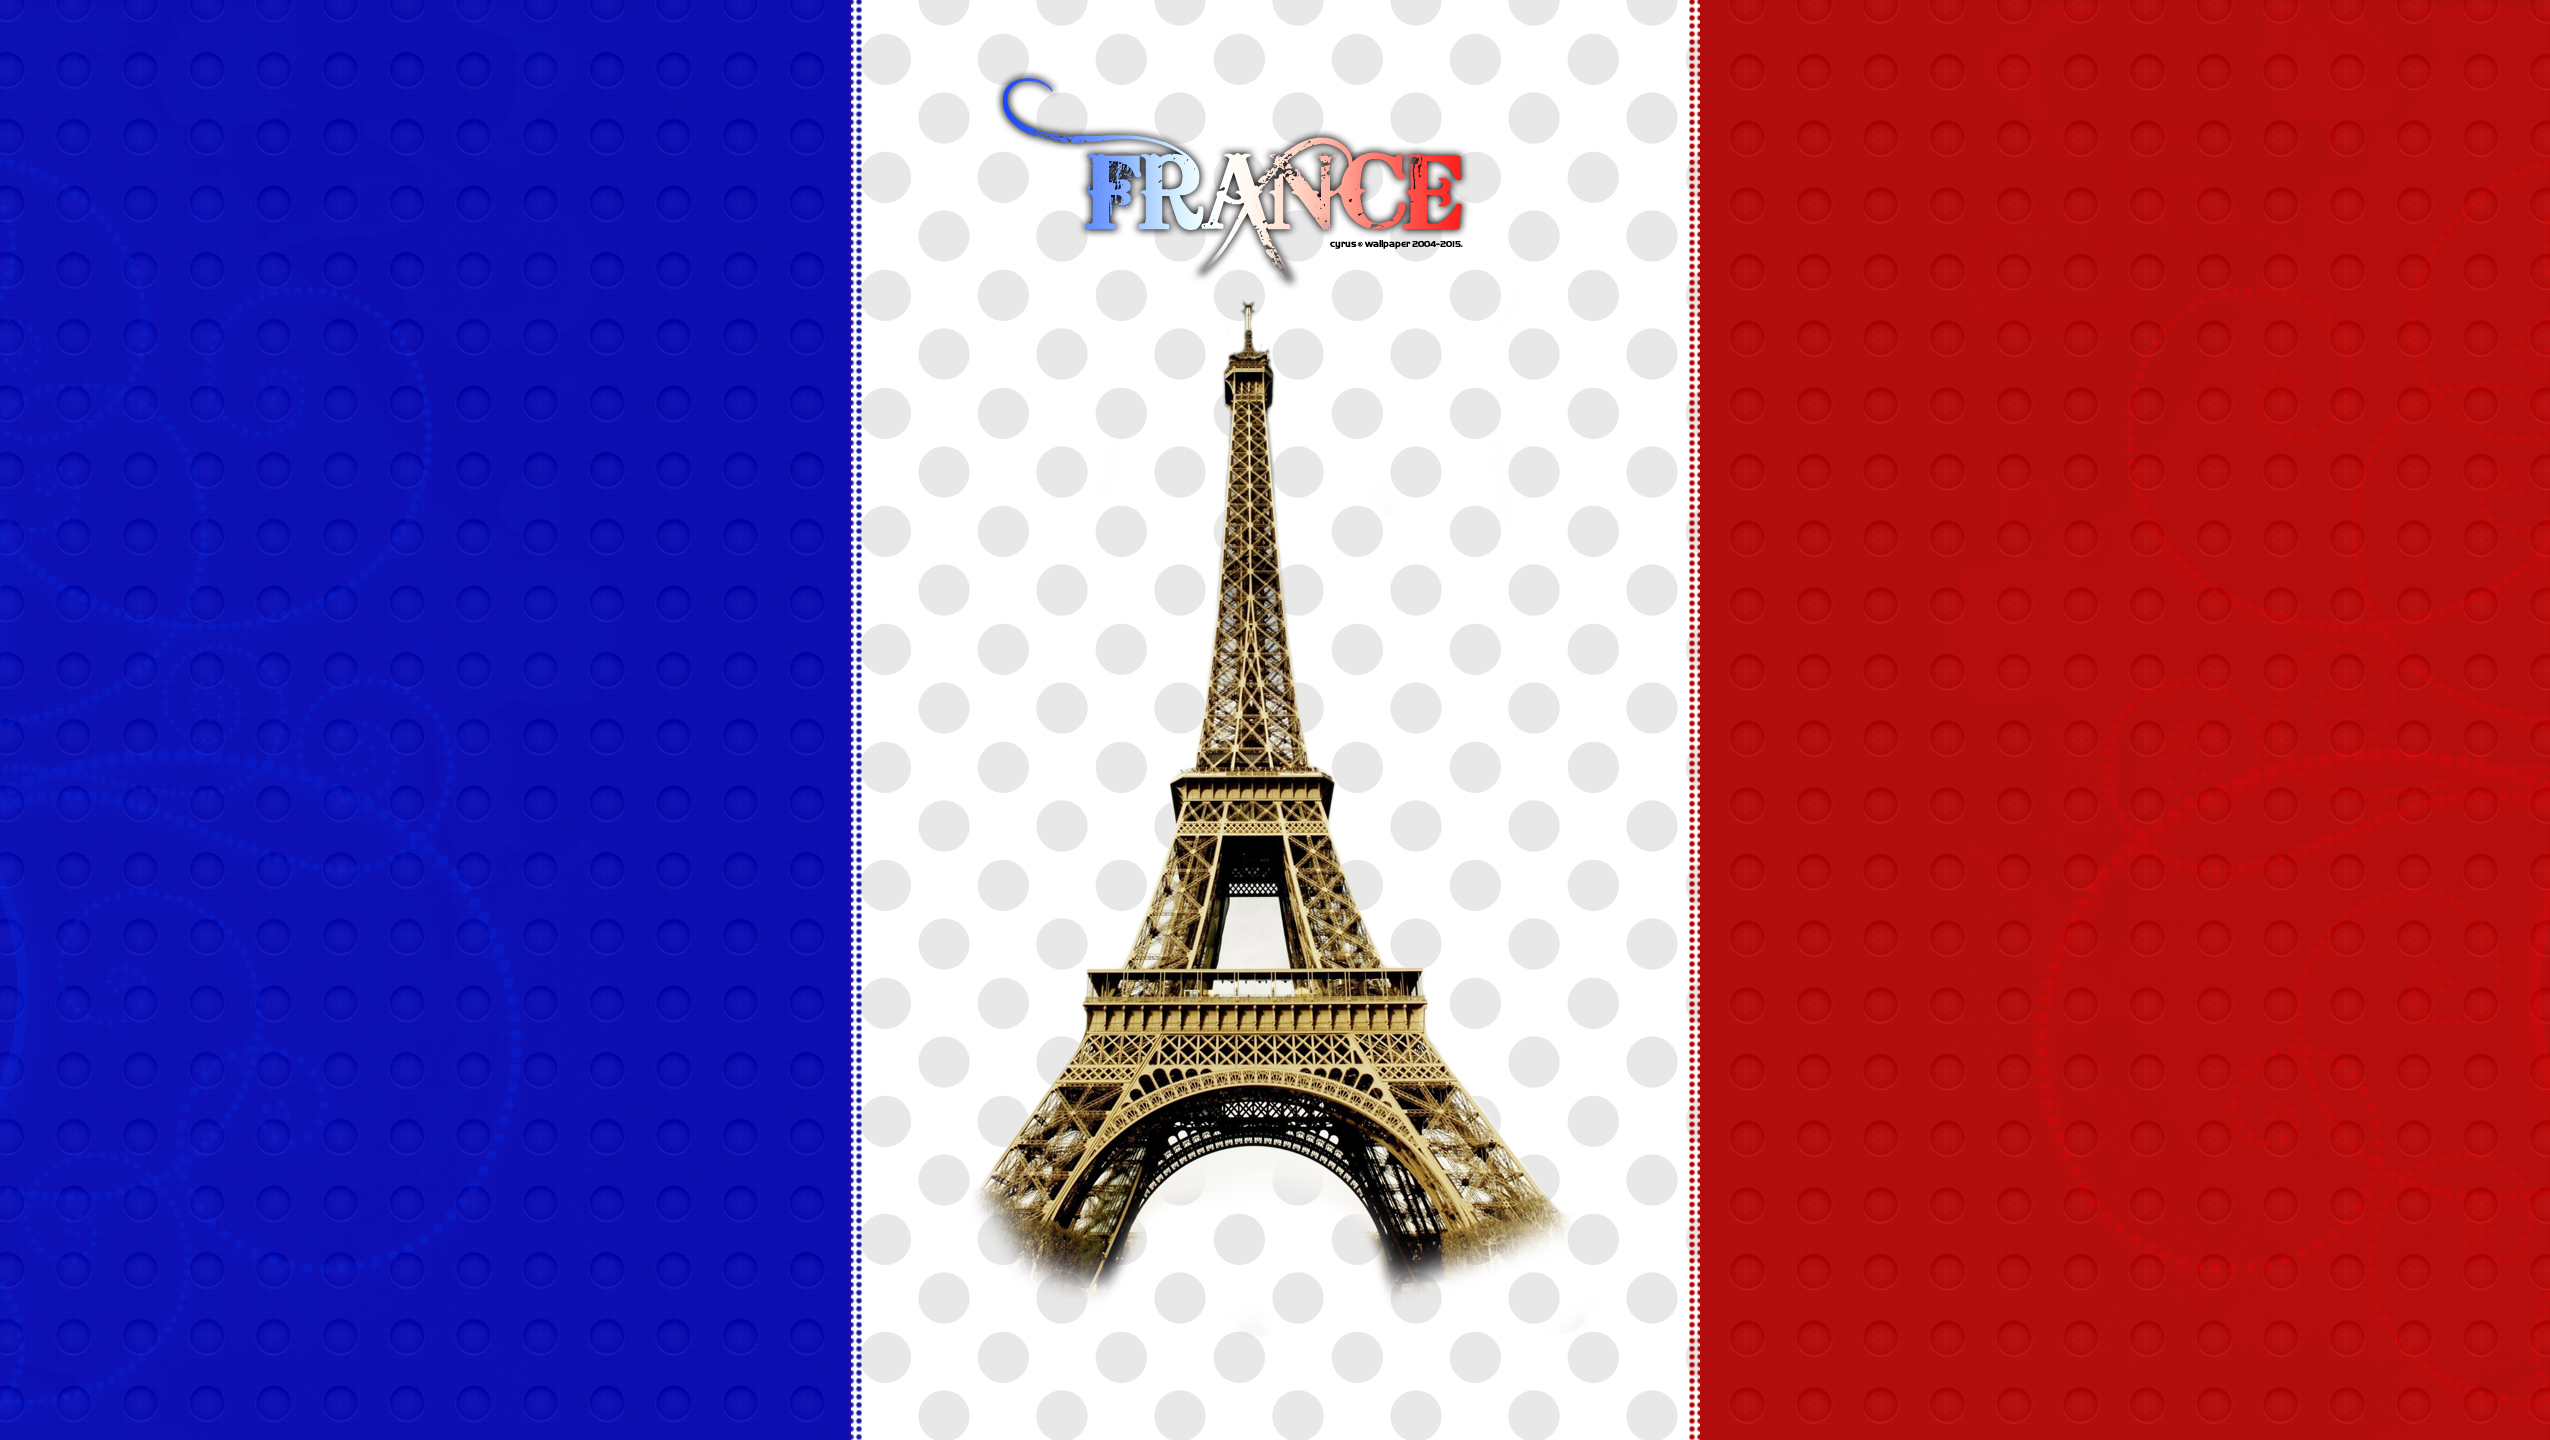 عکس های پرچم کشور فرانسه